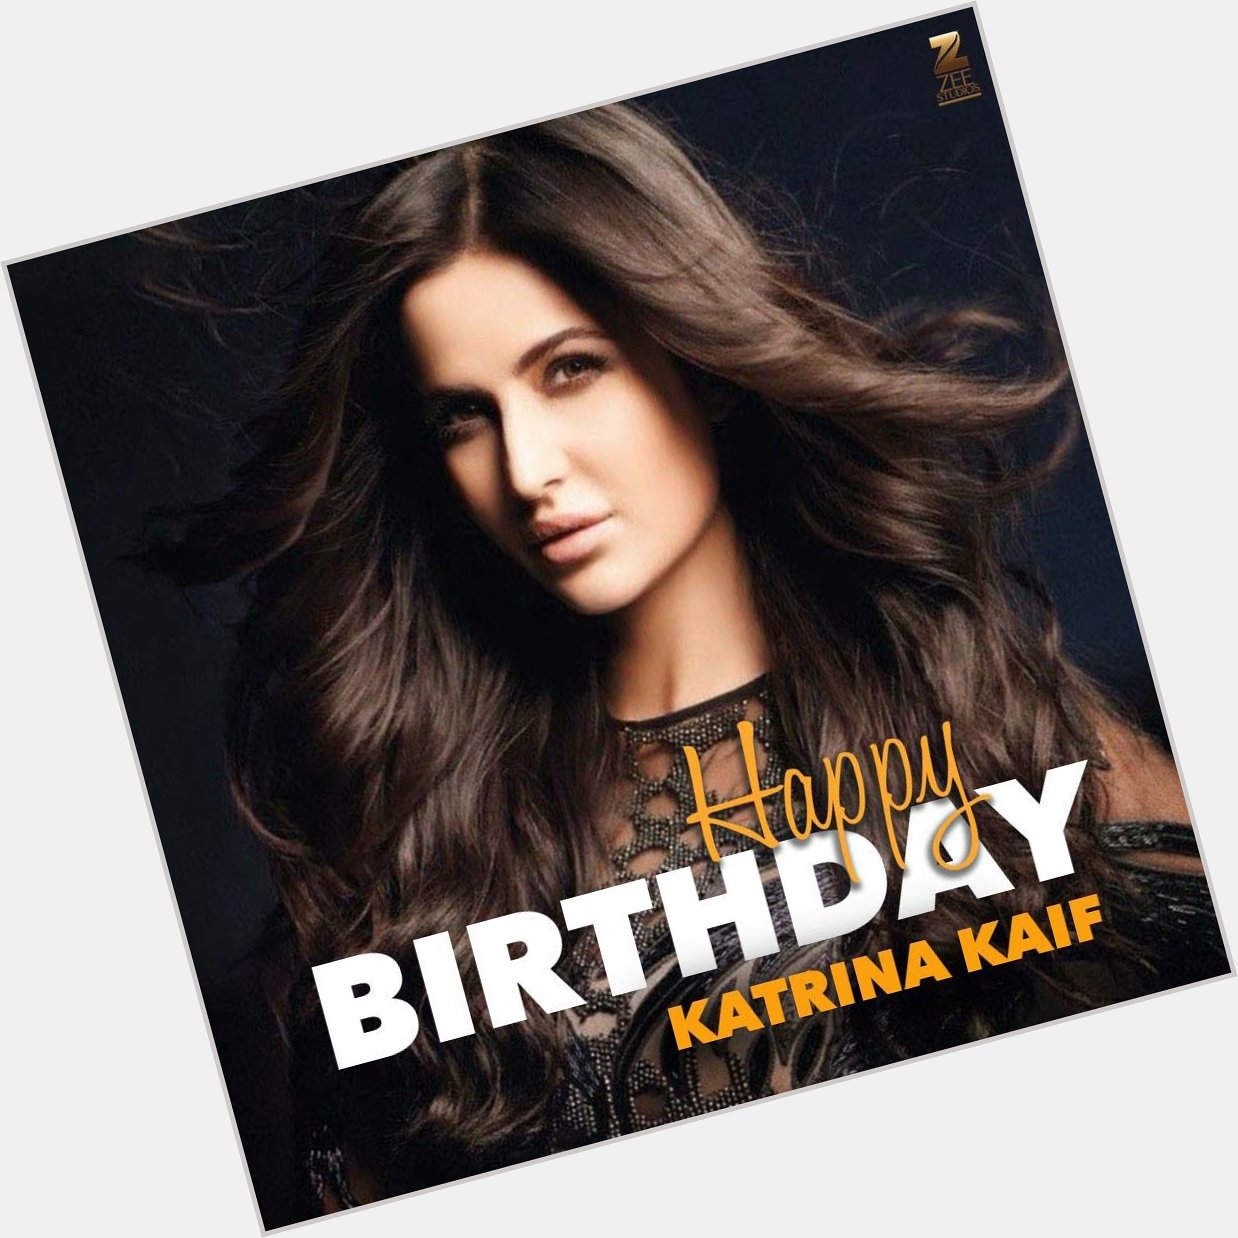 The mesmerising and talented, here\s wishing Katrina Kaif a very Happy Birthday. 